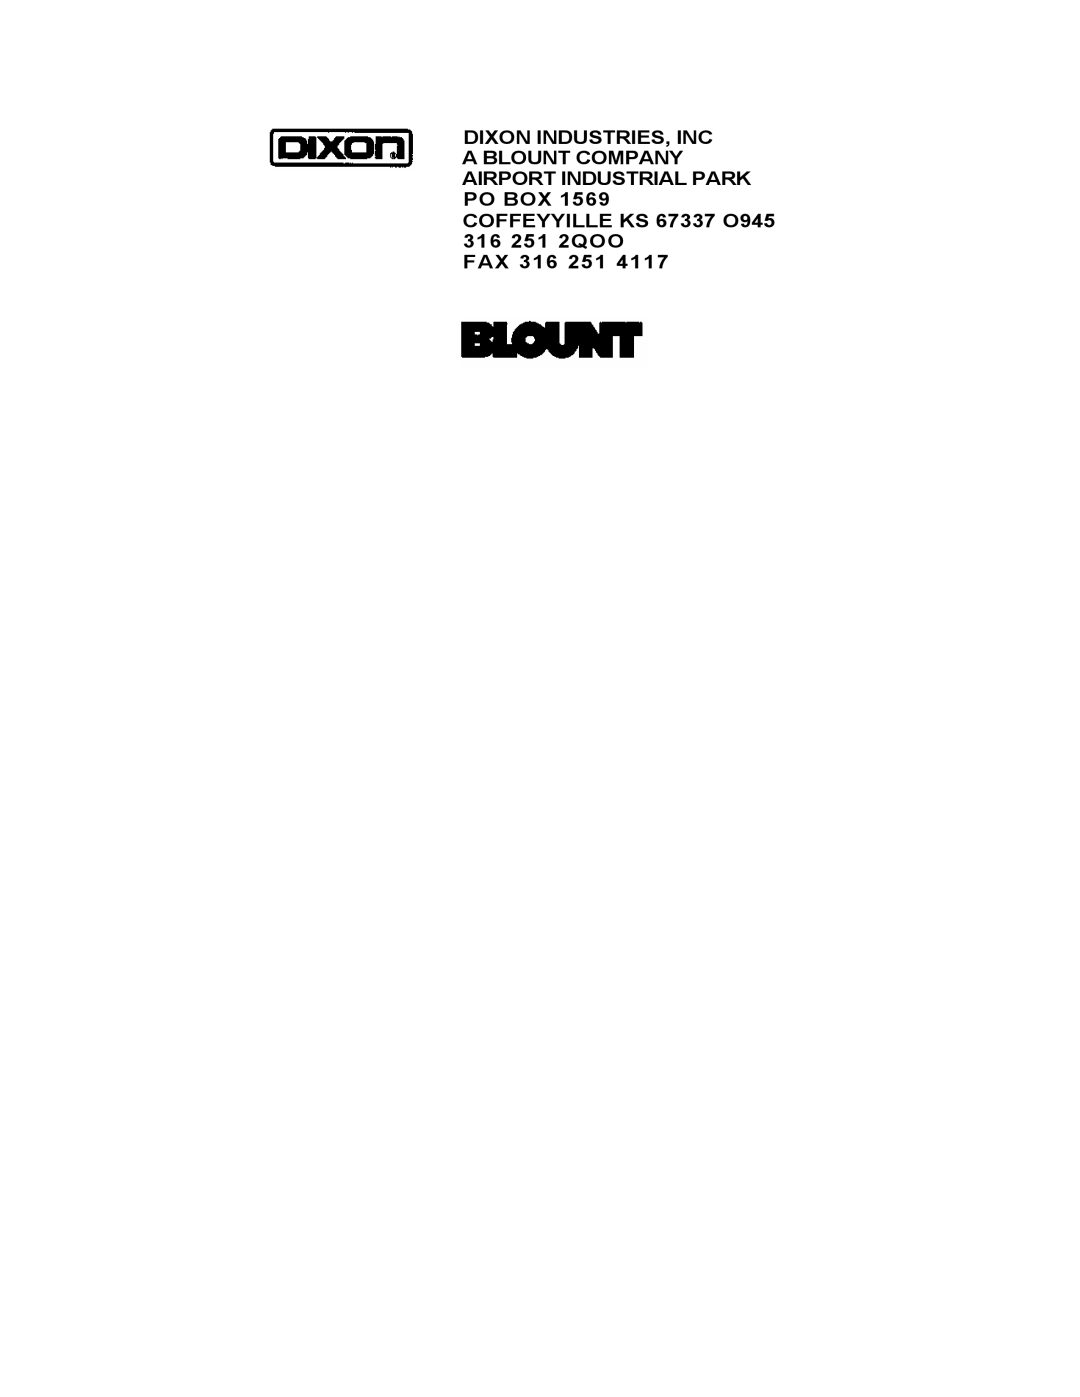 Dixon 5501 manual Fax 